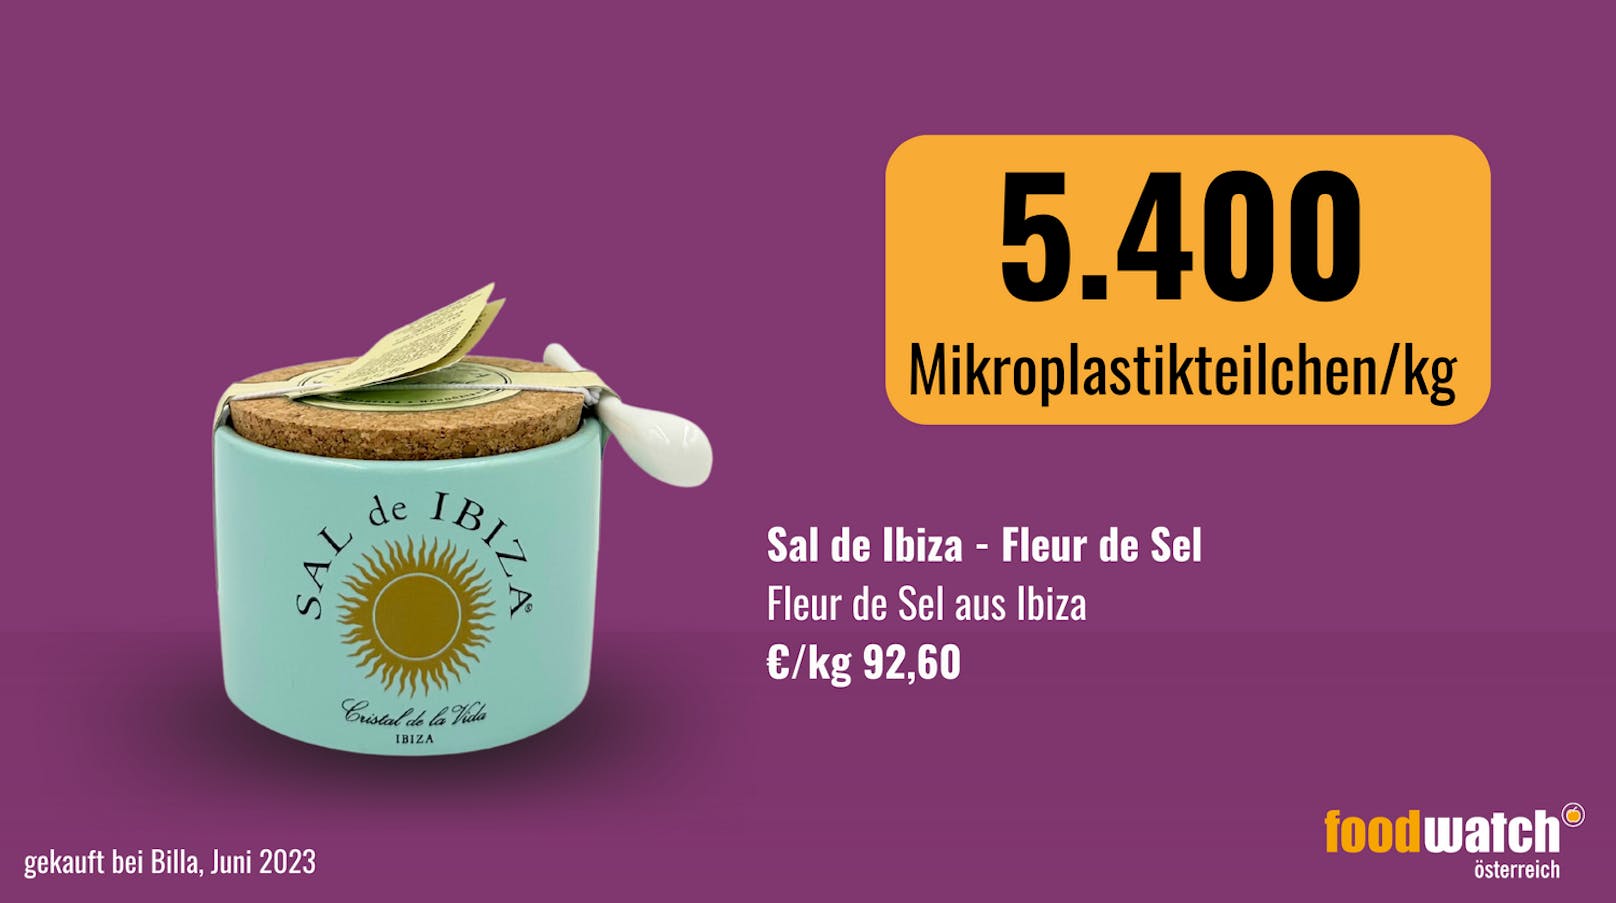 Der Mikroplastik-Partikel-Anteil im Fleur de Sel Ibiza war mit 5.400 Partikeln/kg hoch. Das ist sehr wahrscheinlich auf die Art der Gewinnung dieses Salzes zurückzuführen. Bei der Gewinnung werden die Kristallsalze von der Meeresoberfläche abgeschöpft.